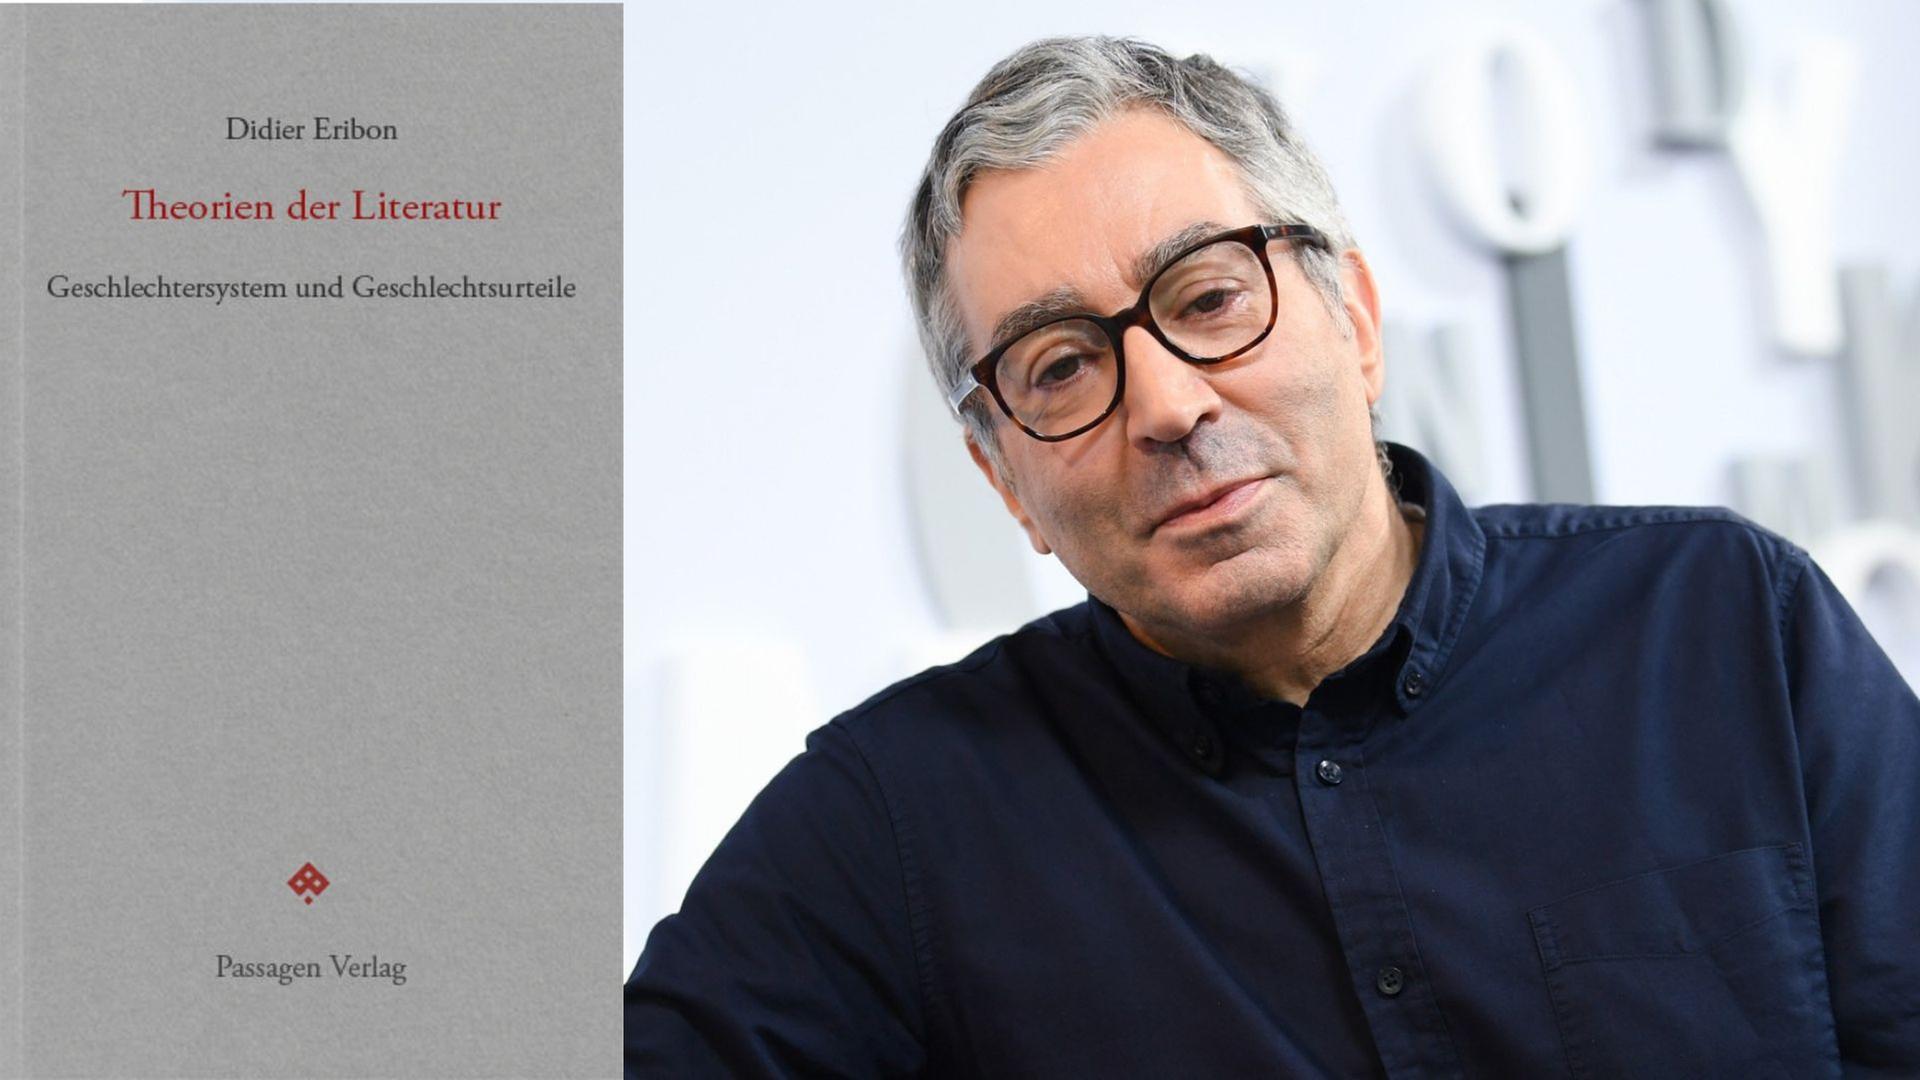 Zu sehen ist der Autor Didier Eribon und das Cover seines Buches "Theorien der Literatur".